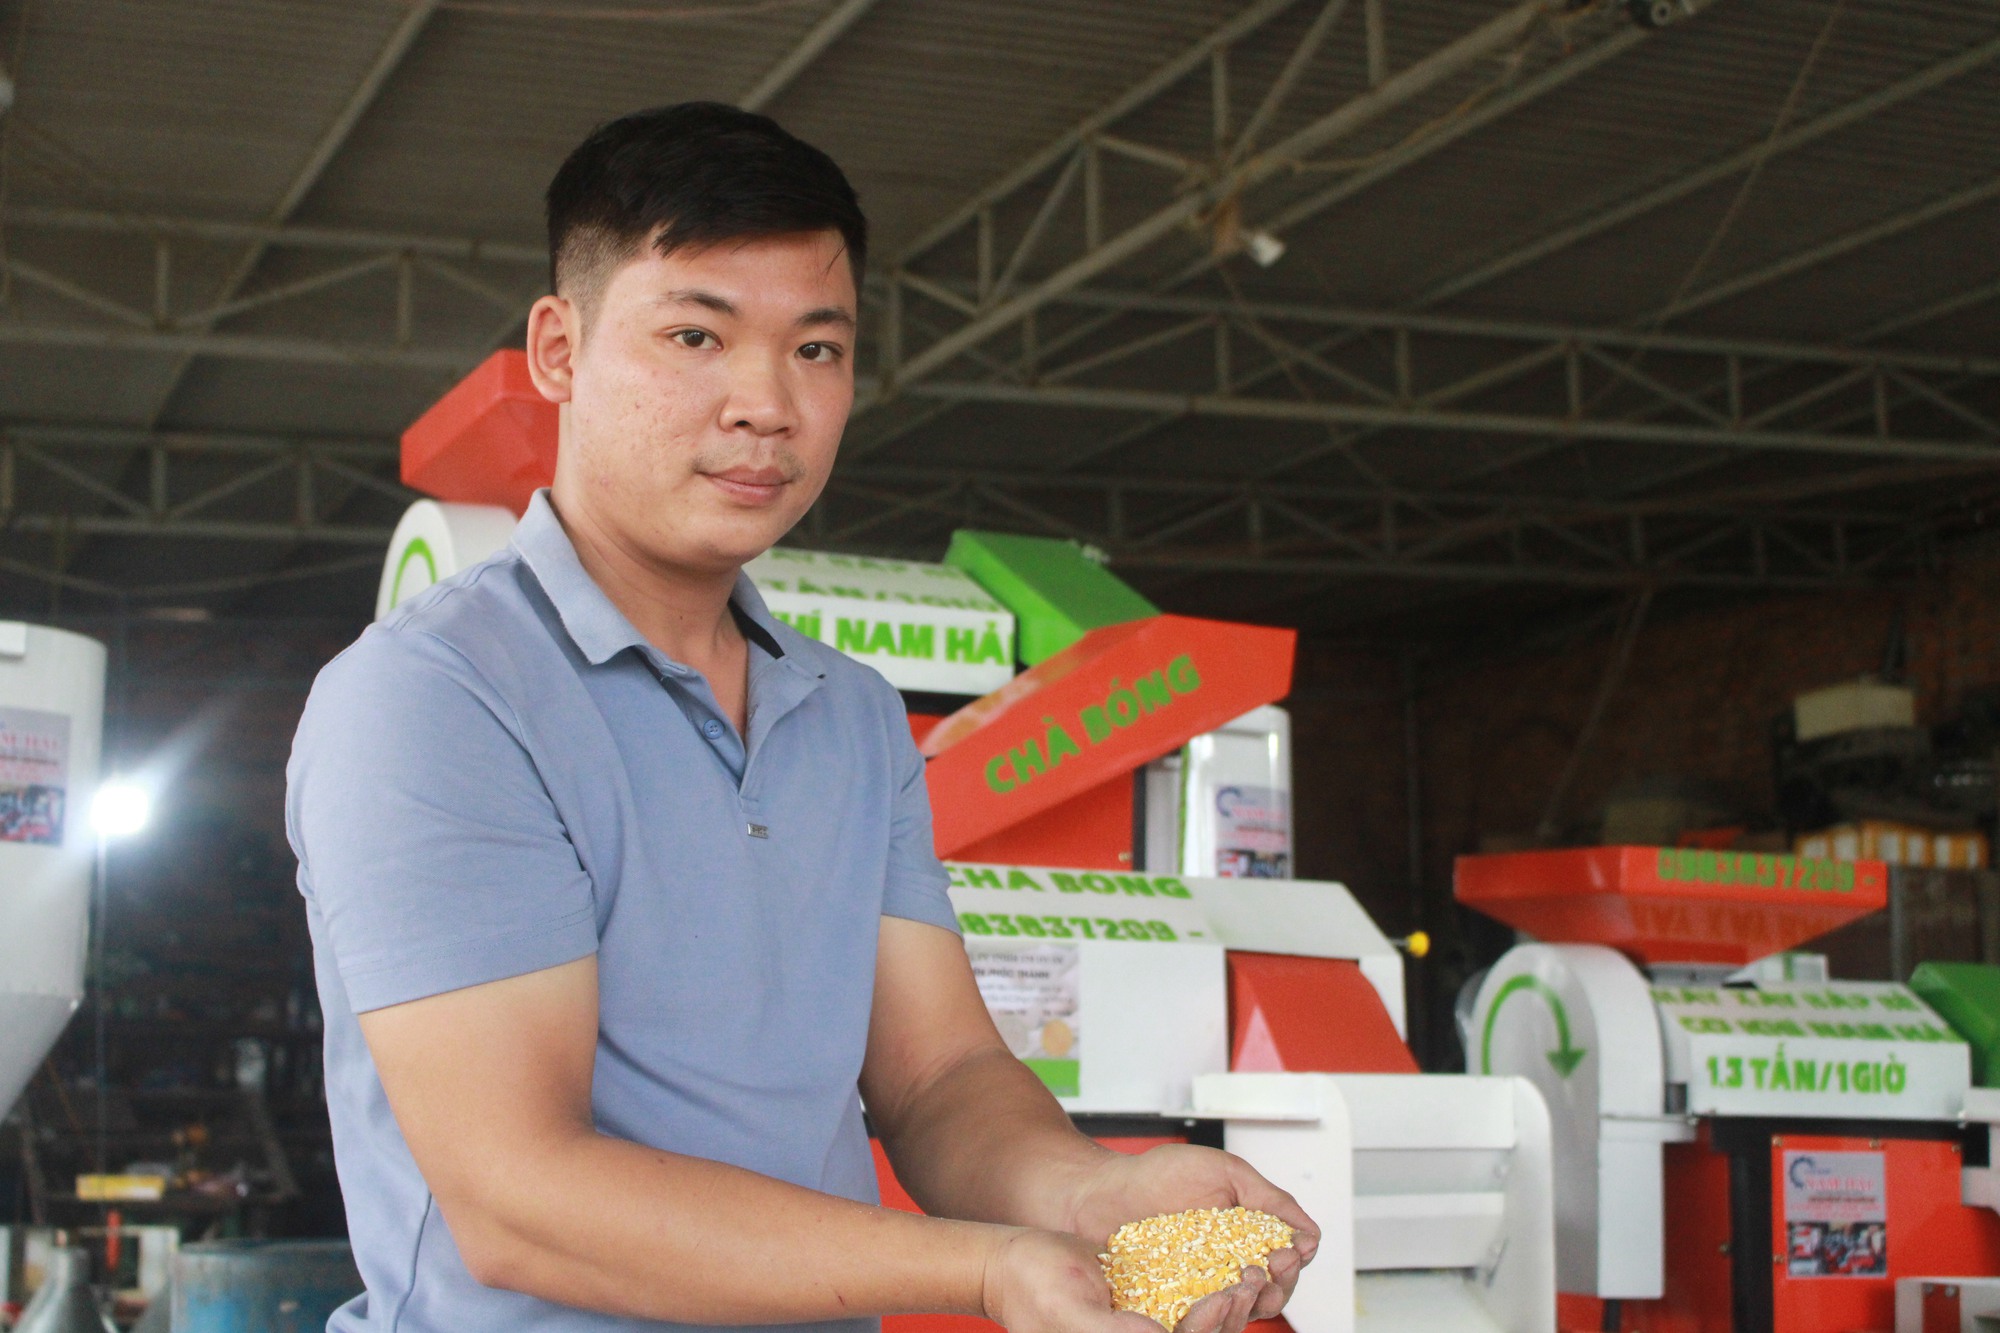 Kỹ sư 9x ở Khánh Hòa nghiên cứu chế tạo thành công máy xay bắp liên hoàn, khách hỏi mua nườm nượp - Ảnh 1.